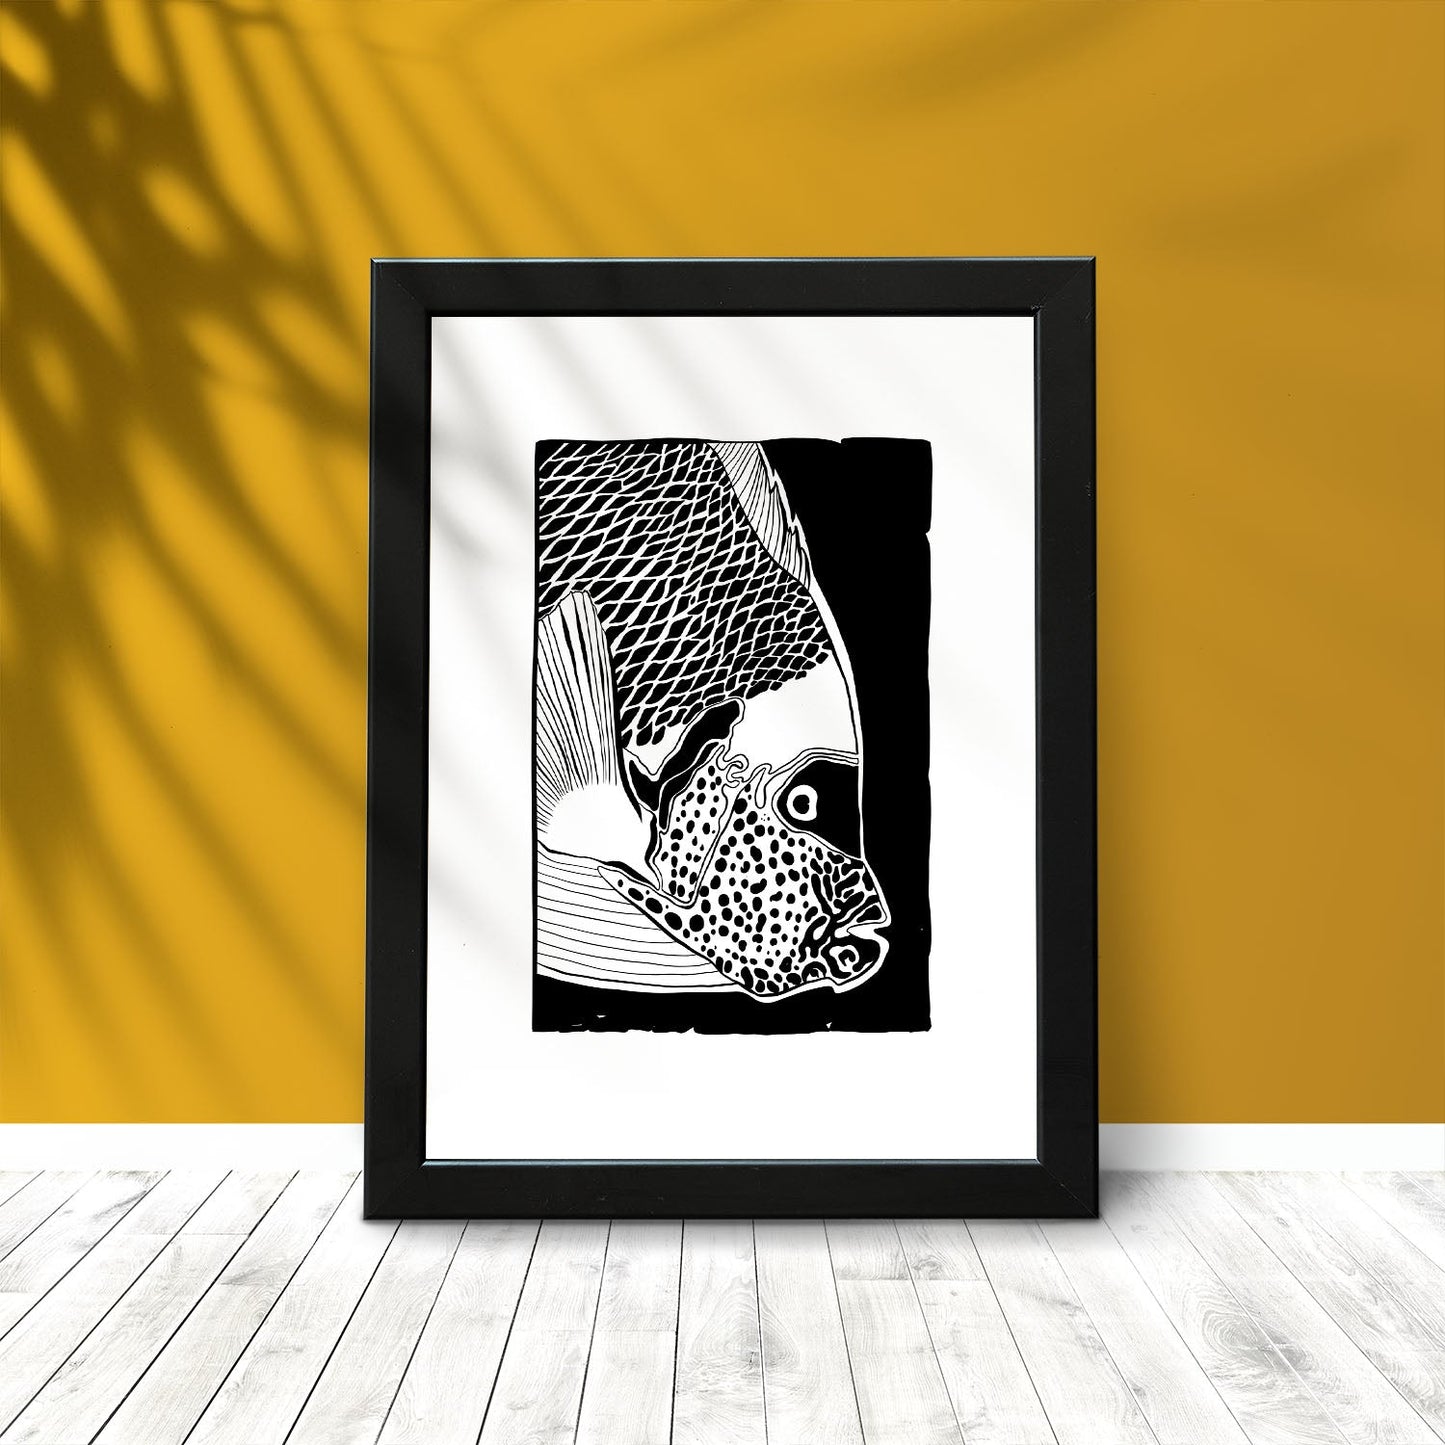 Closeup Parrot Fish-Artwork-Nacnic-Nacnic Estudio SL